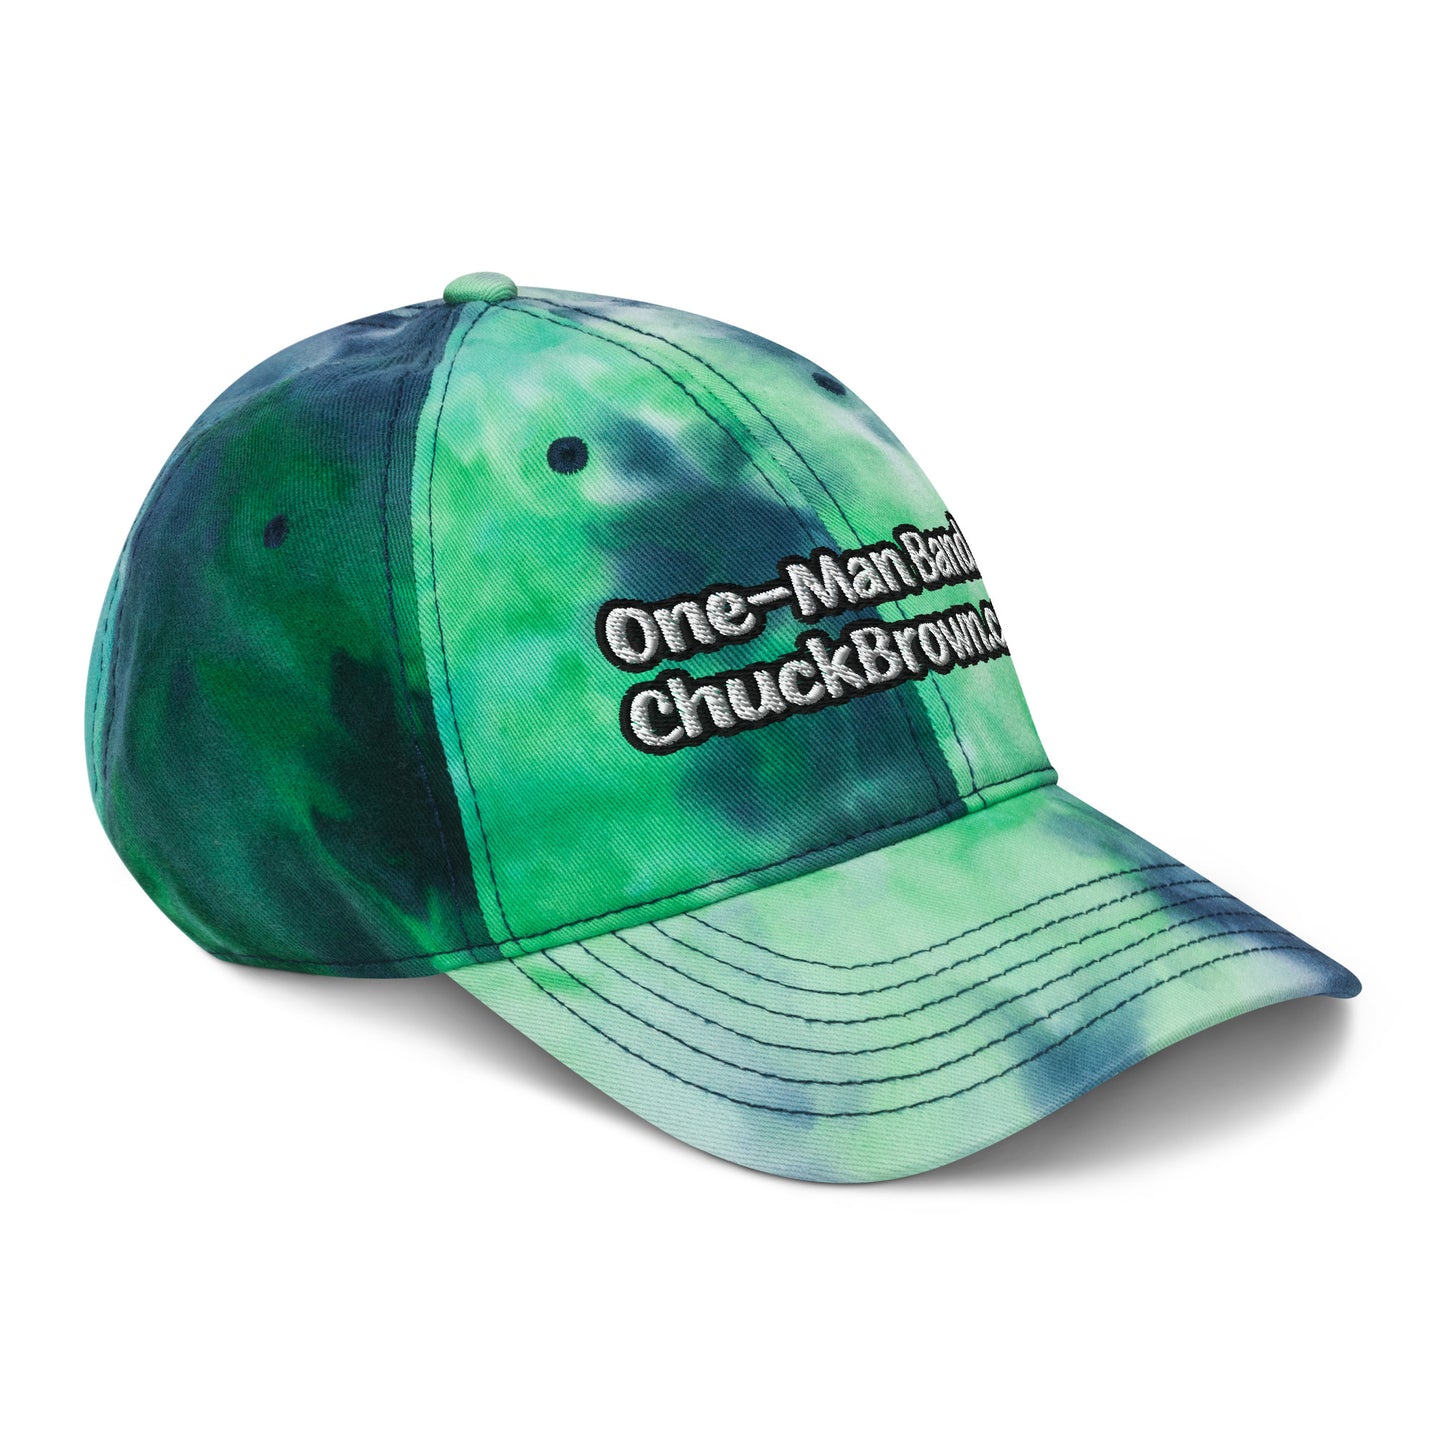 'CB' tie-dye hat